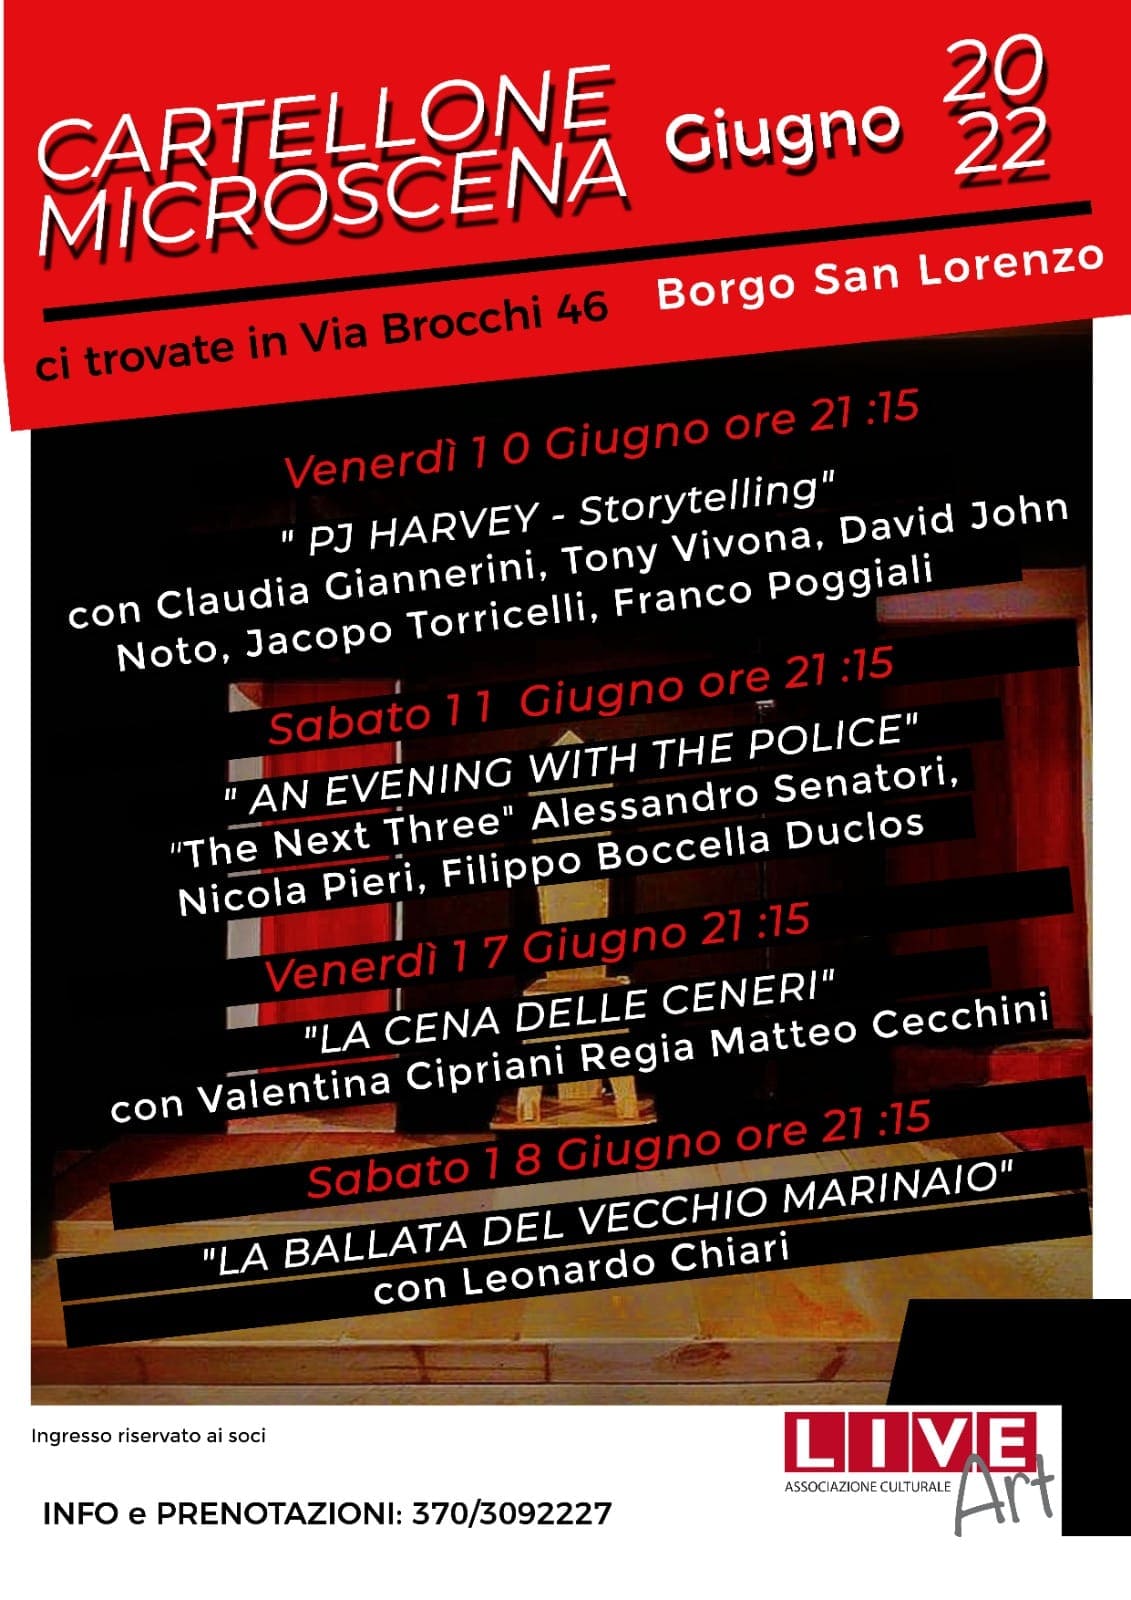 Microscena a Borgo San Lorenzo - FI. Musica sul palco